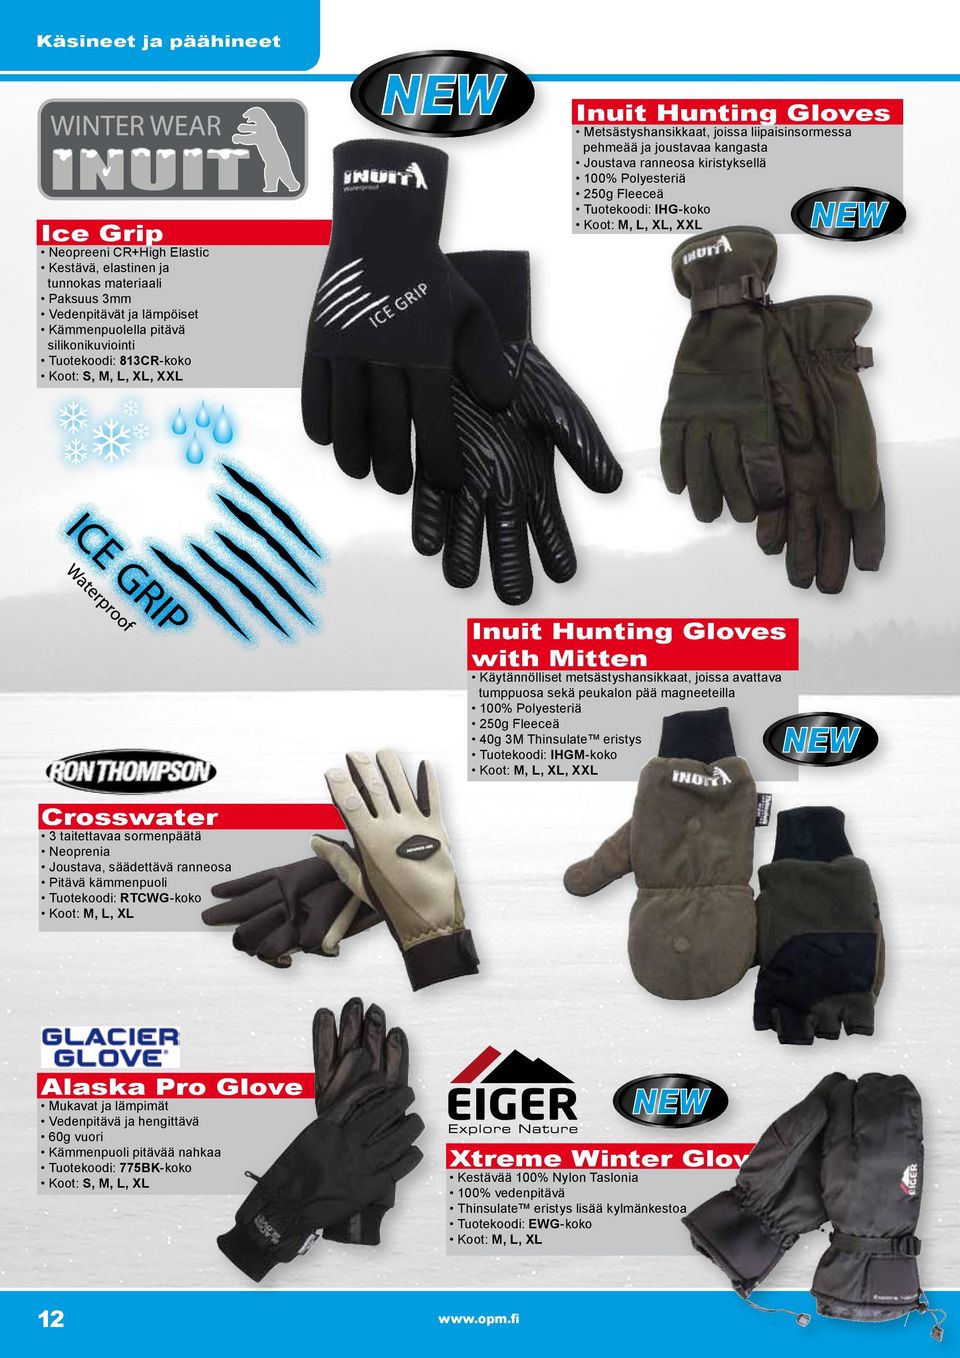 IHG-koko Koot: M, L, XL, XXL Inuit Hunting Gloves with Mitten Käytännölliset metsästyshansikkaat, joissa avattava tumppuosa sekä peukalon pää magneeteilla 100% Polyesteriä 250g Fleeceä 40g 3M